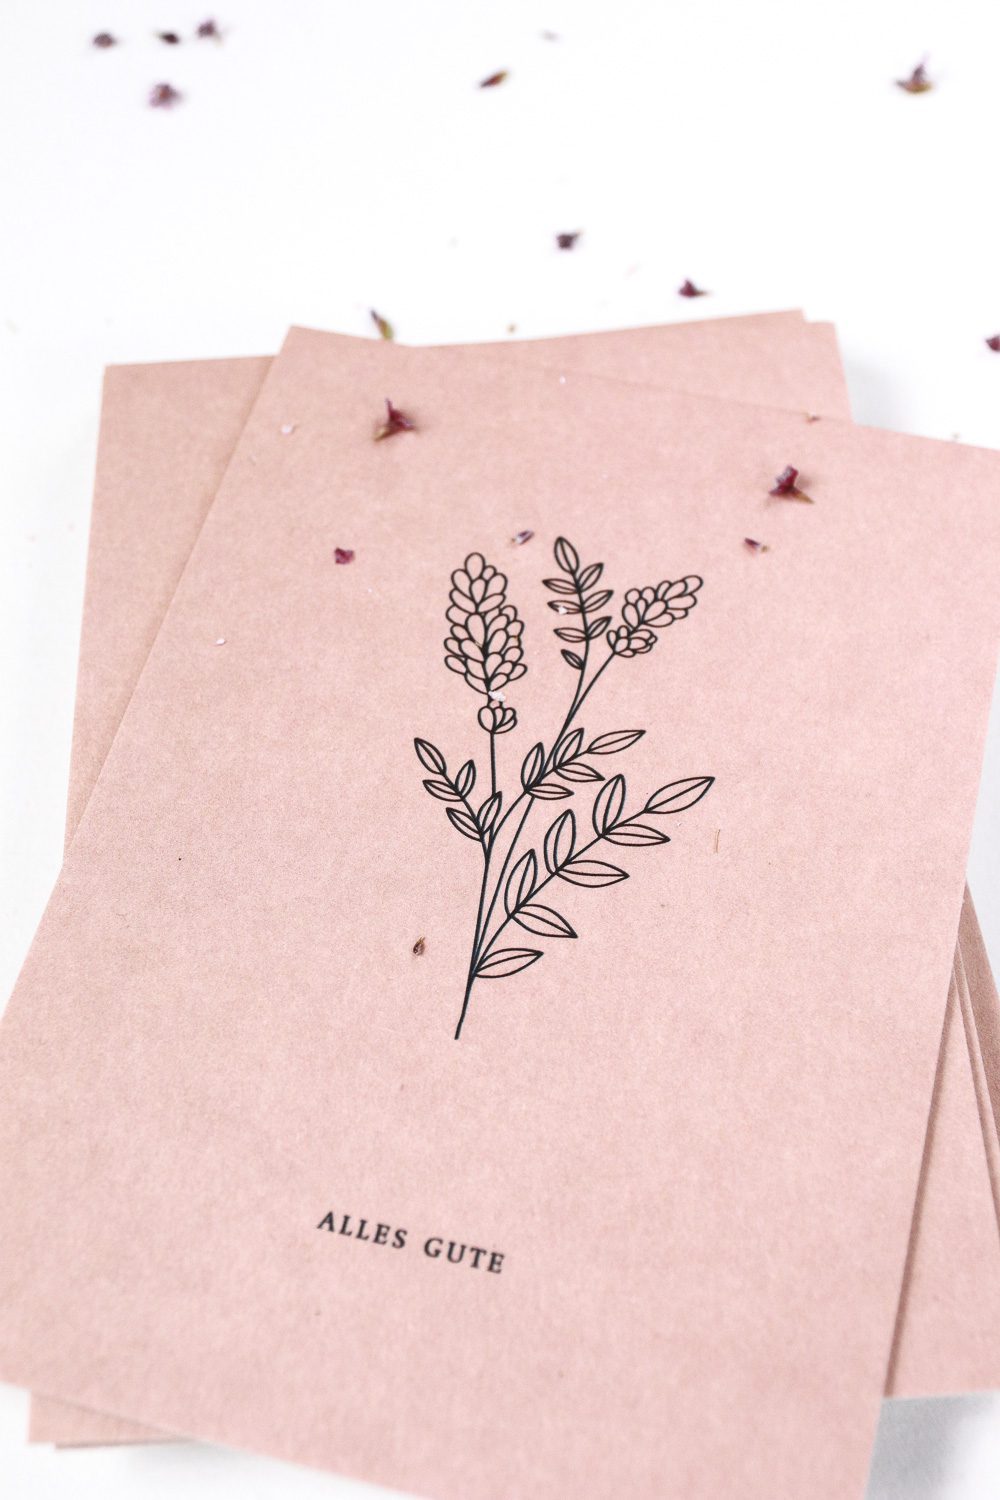 Alles Gute Karte gedruckt auf kräftiger Holzschliffpappe in rosa mit Blüten